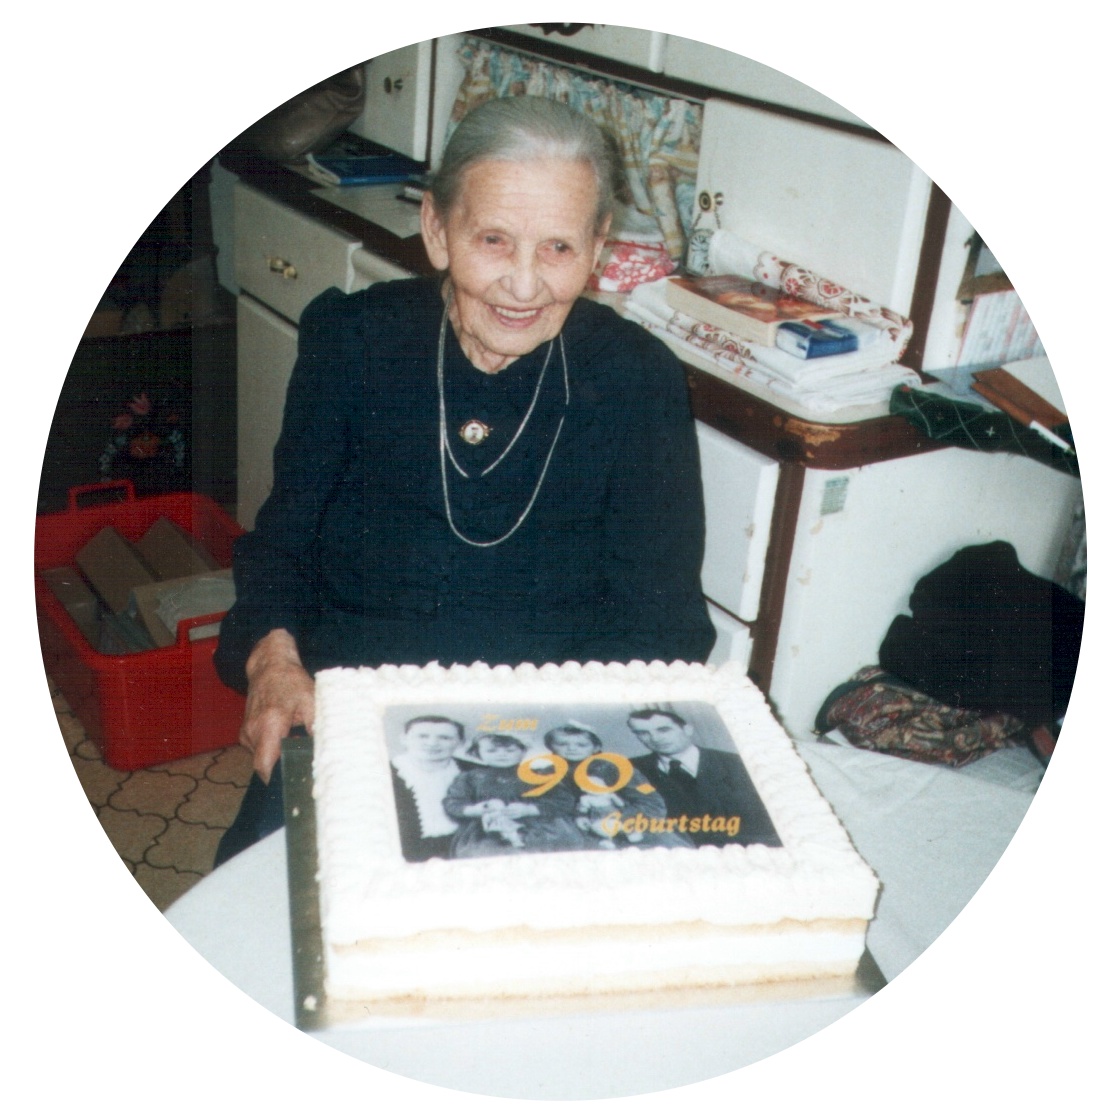 Zum 90. Geburtstag wurde eine Torte mit ihrem Jugendfoto gebacken